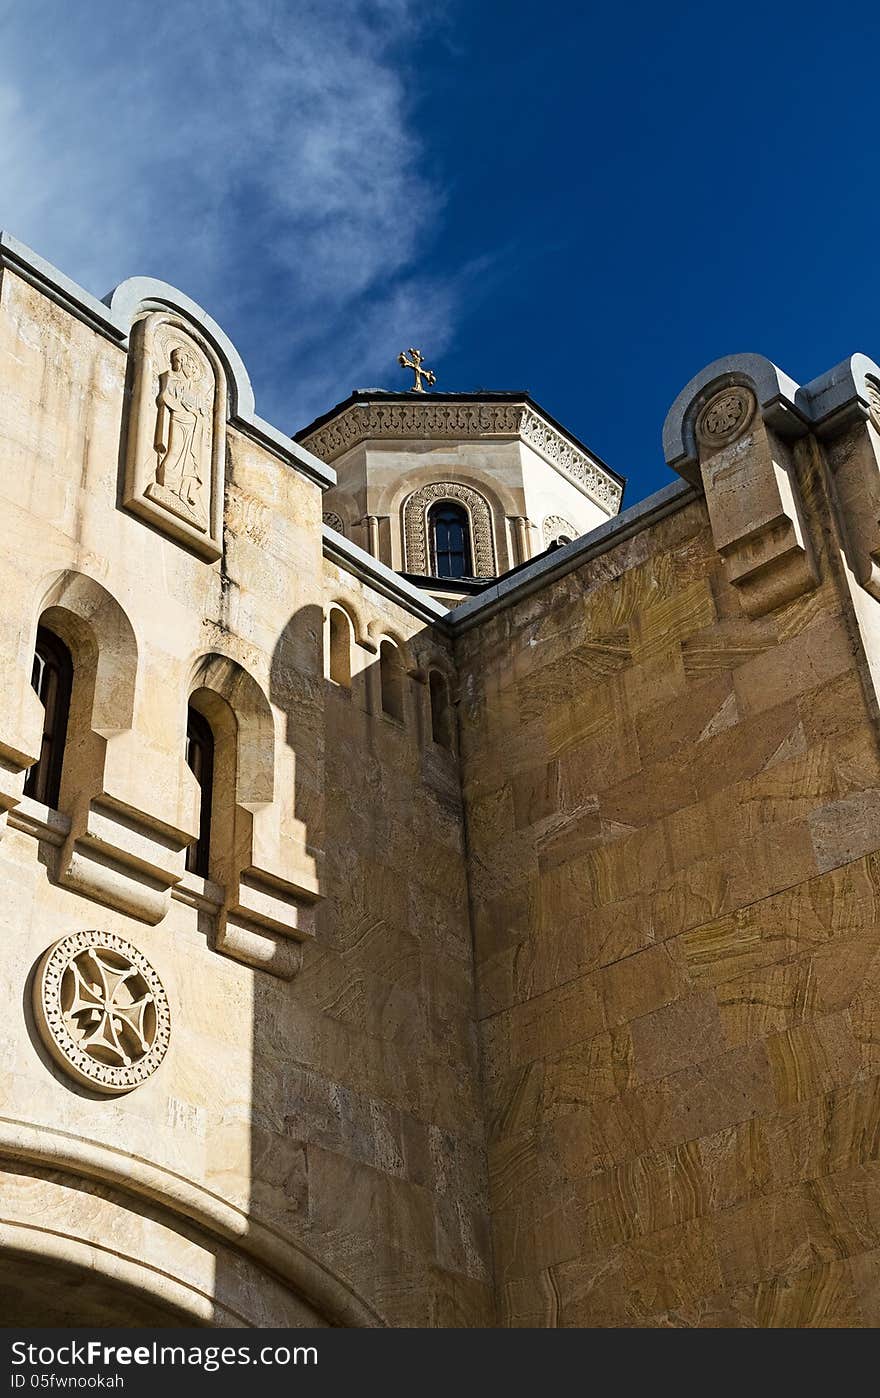 cathedral Sameba , details of medieval architecture. cathedral Sameba , details of medieval architecture